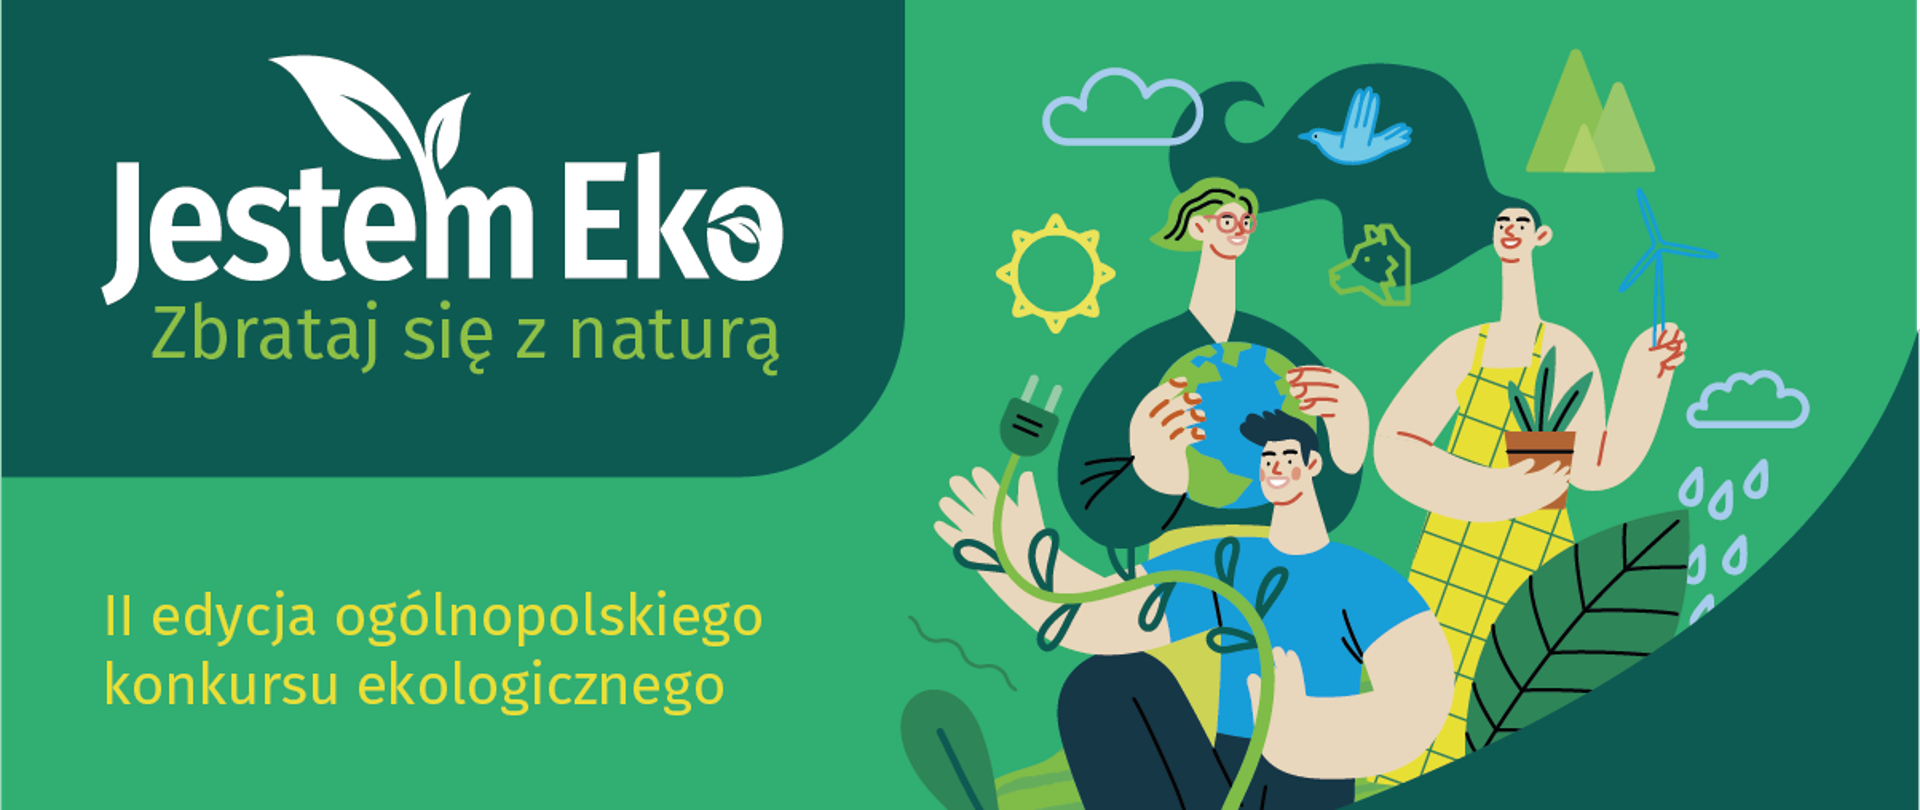 Grafika - na zielonym tle kilka sylwetek ludzi wśród liści i napis Jestem Eko - zbrataj się z naturą - II edycja ogólnopolskiego konkursu ekologicznego.